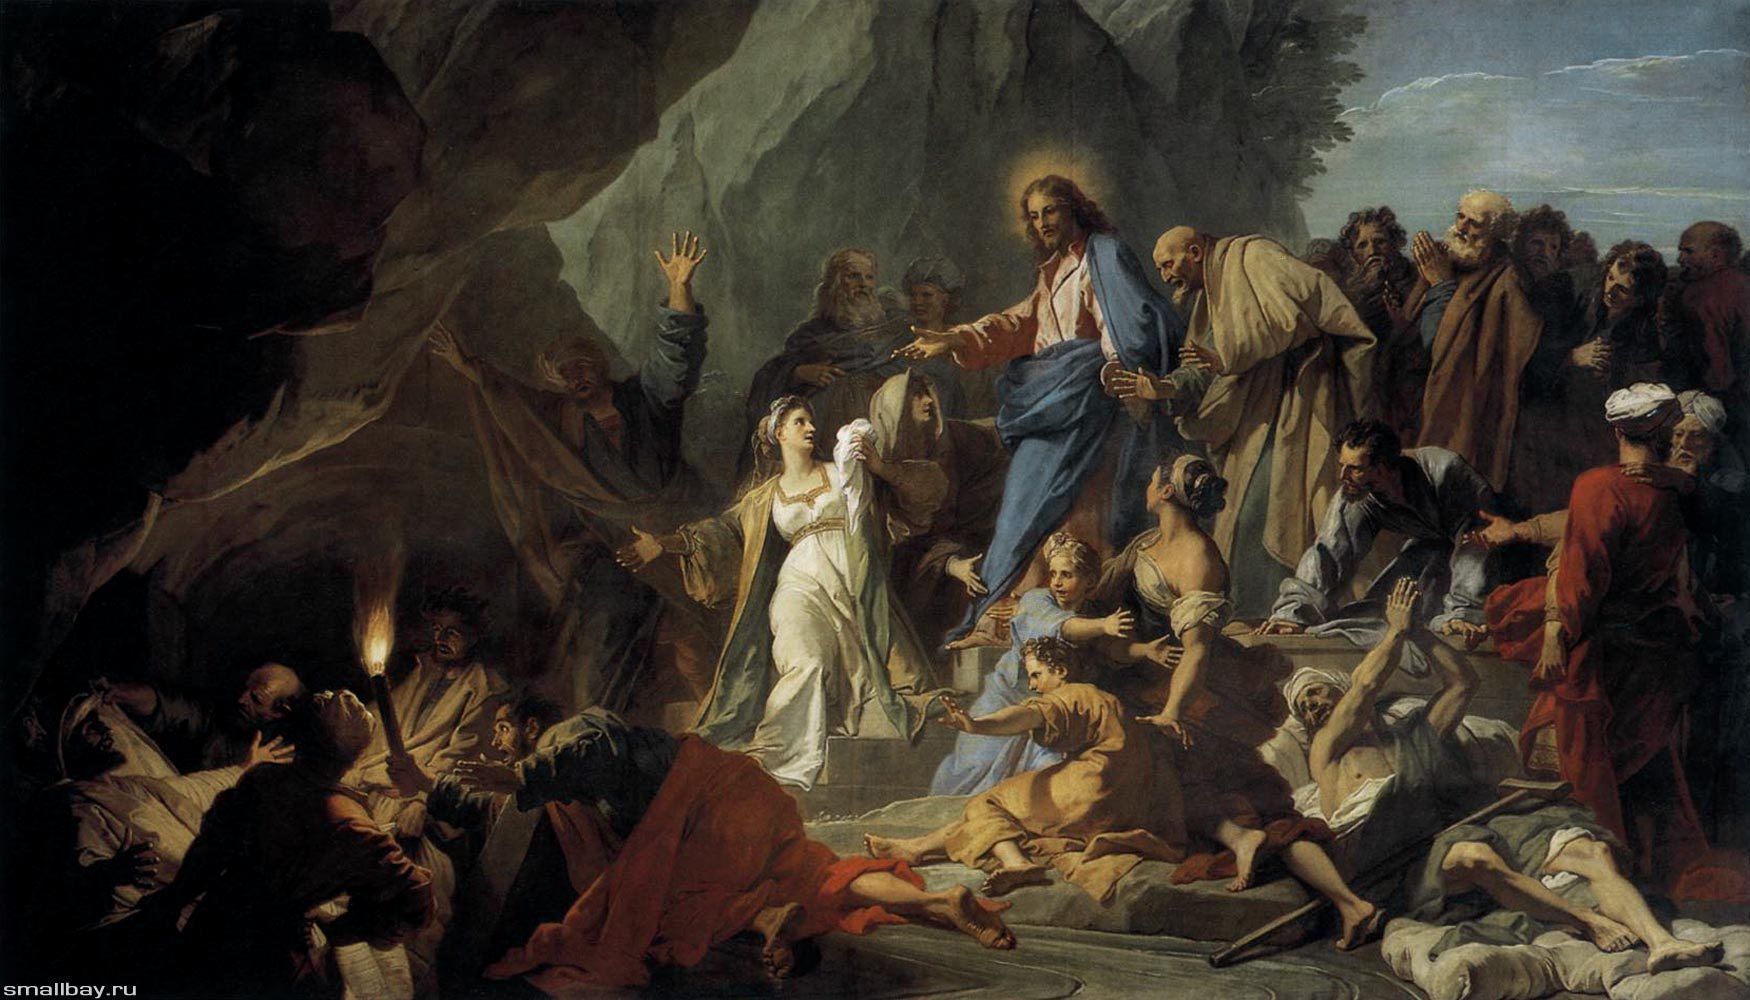 «Воскрешение Лазаря» — картина художника из Италии Гверчино. 1619